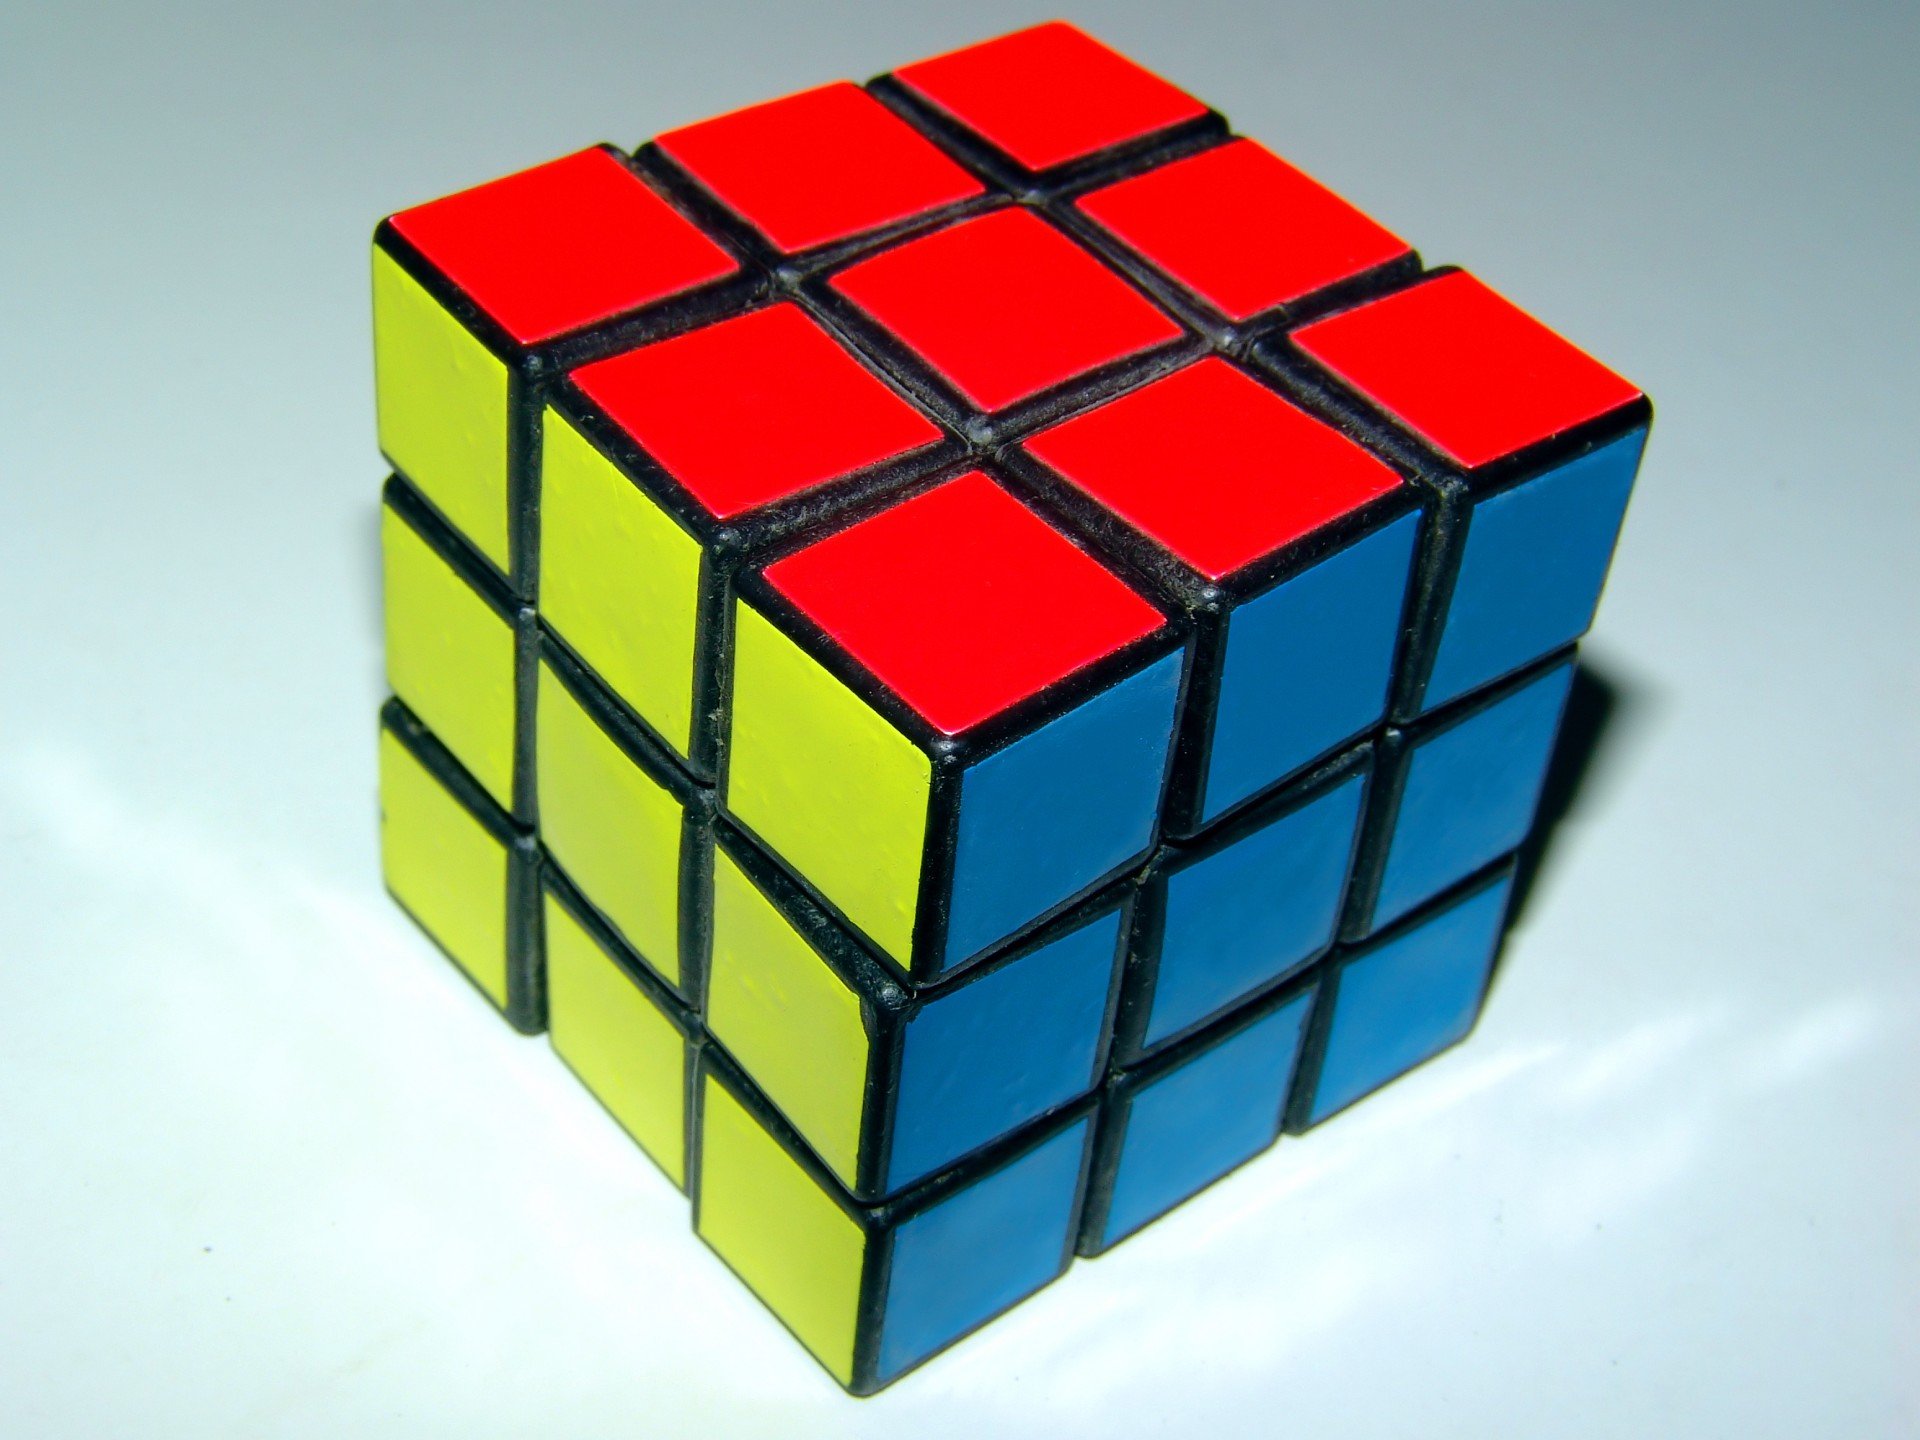 Cube цвет. Кубик Рубика 15 на 15. Кьюб кубик Рубика. Кубик рубик кубик в Кубе в Кубе. Кубин рубик.